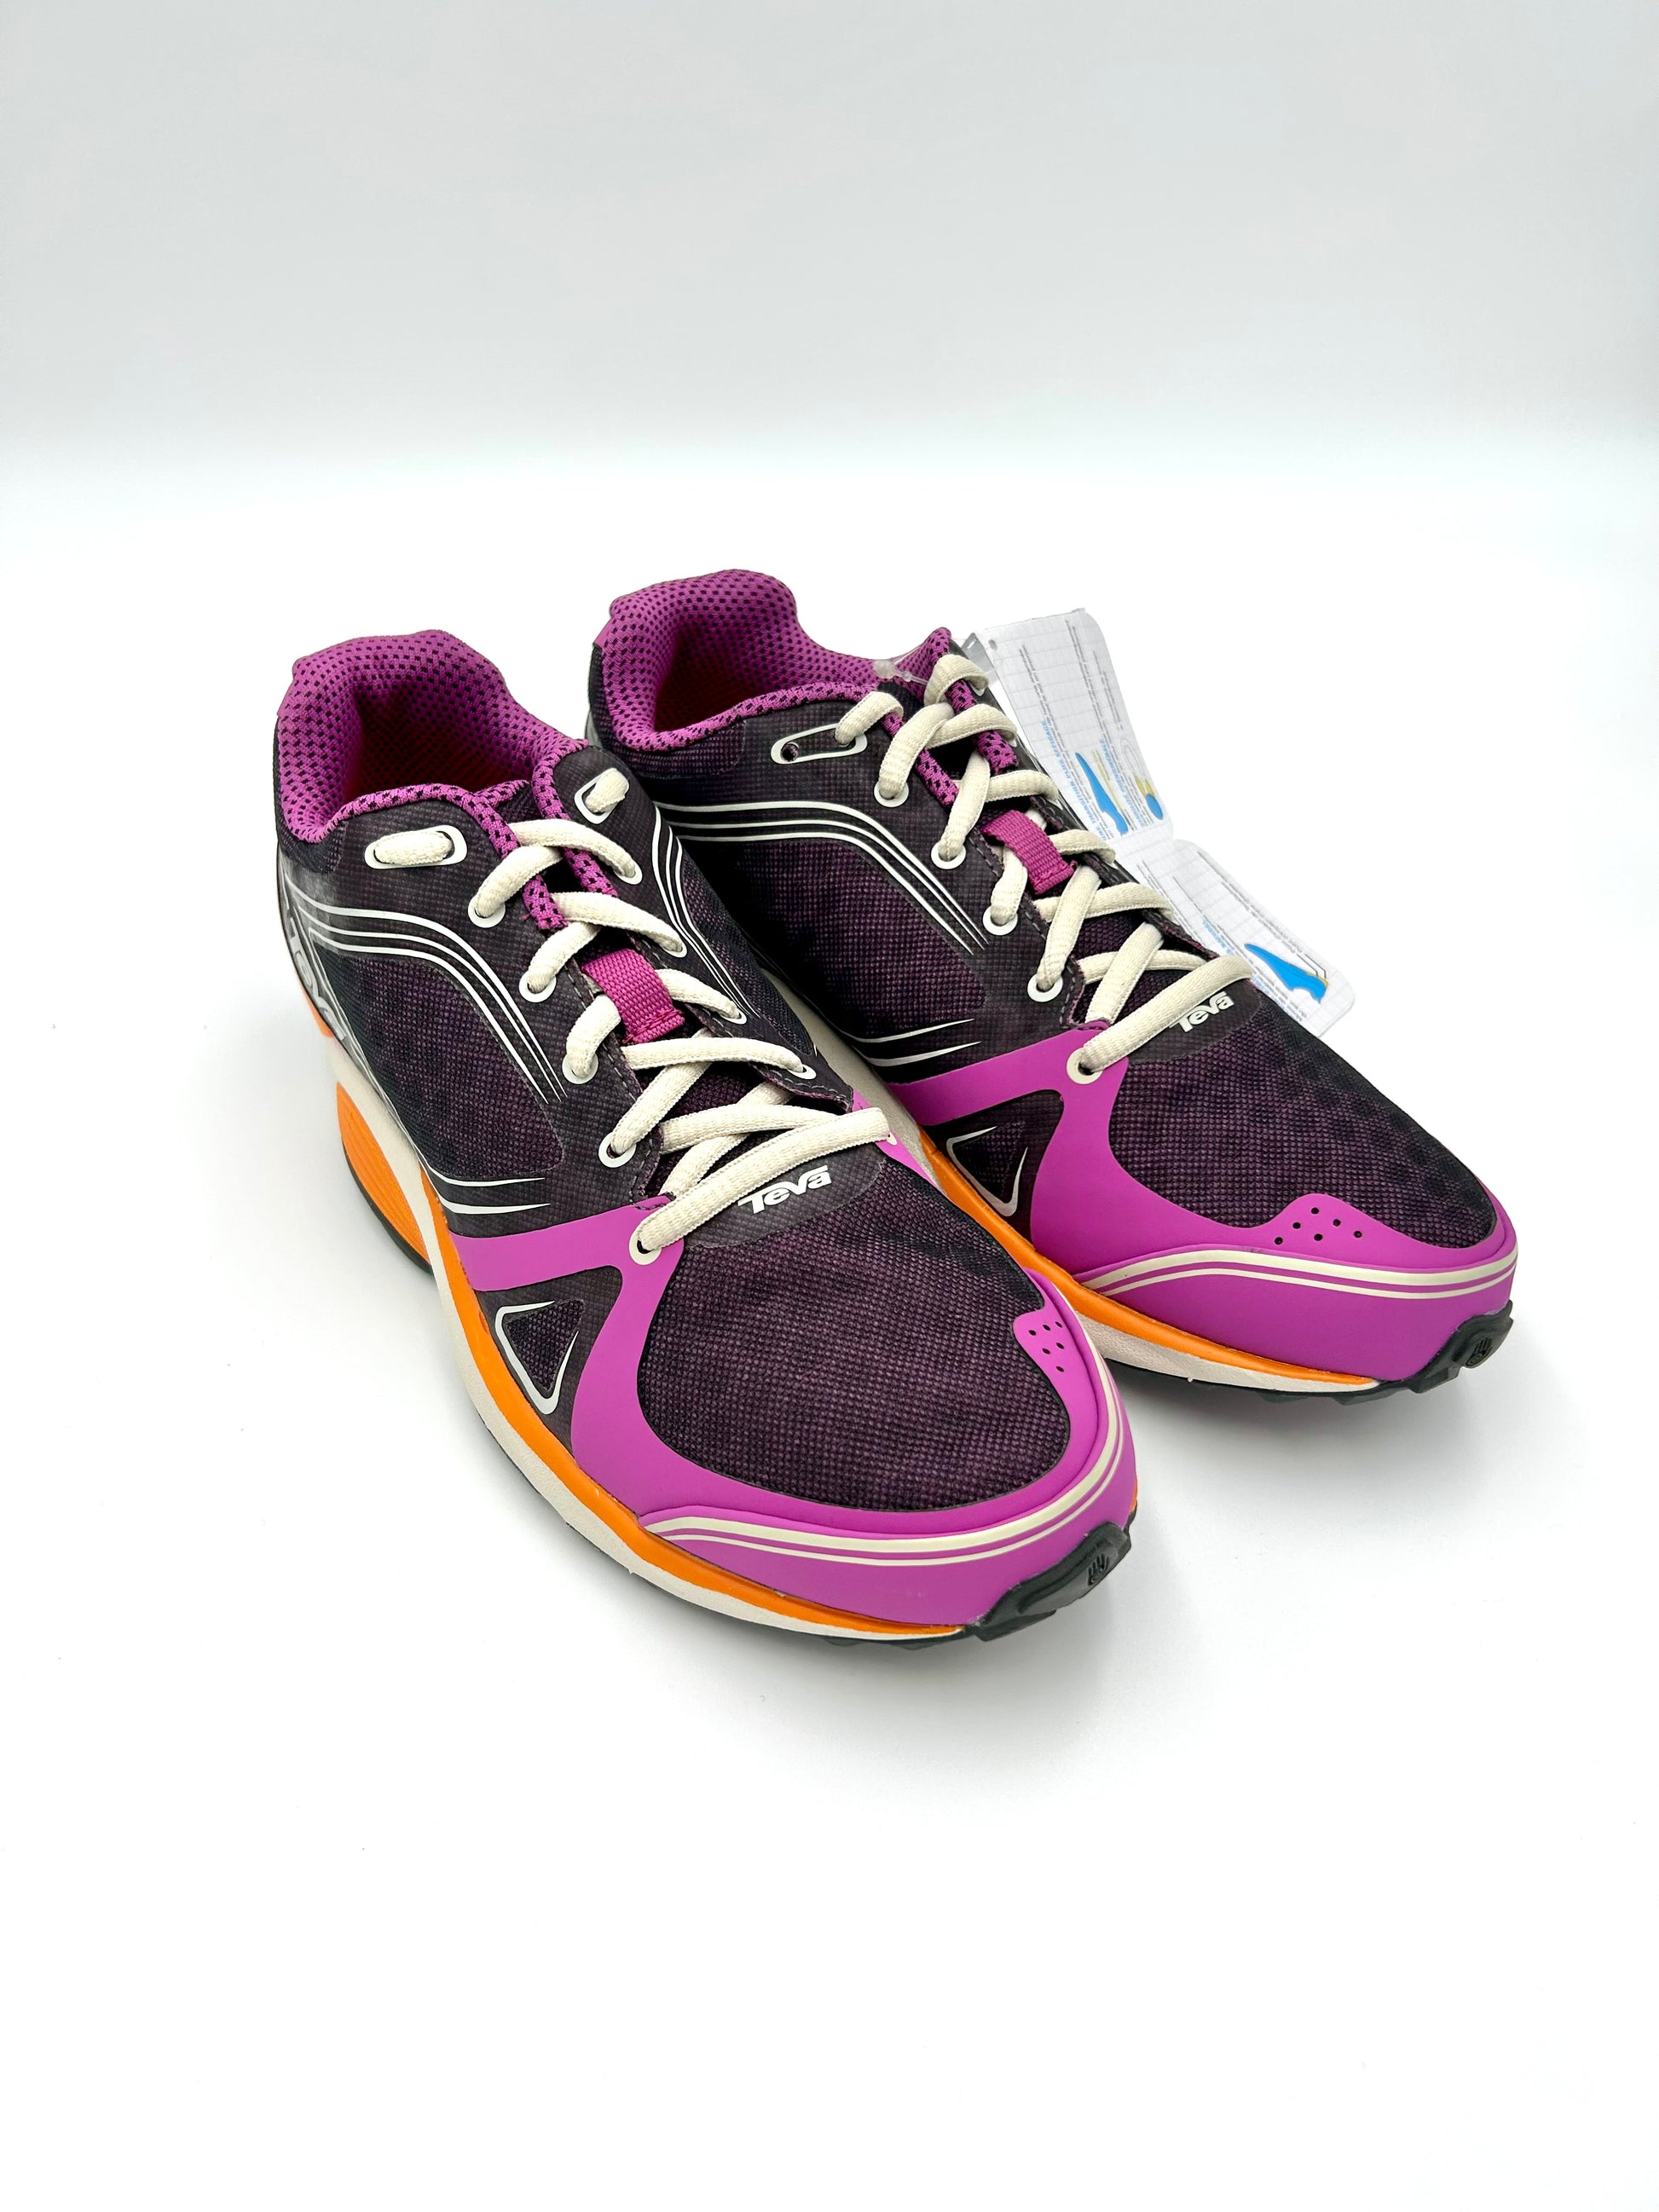 Teva - Sphere Speed Sneakers Shoes - Purple and orange - Teva